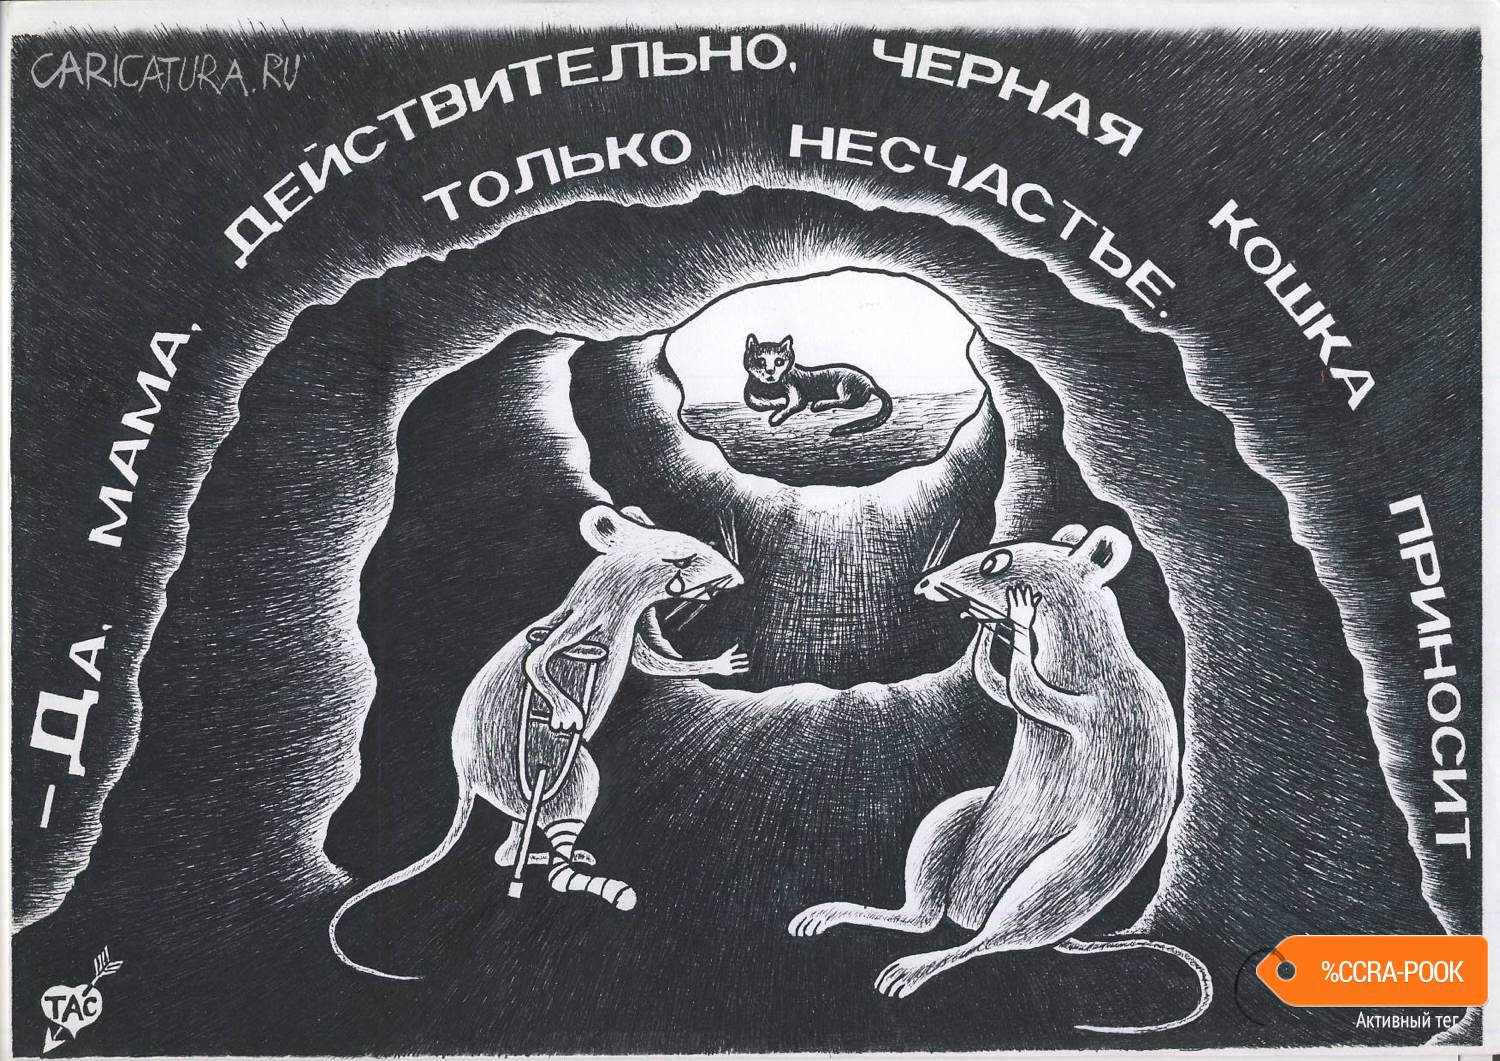 Карикатура "Год Крысы кошке не помеха", Александр Троицкий